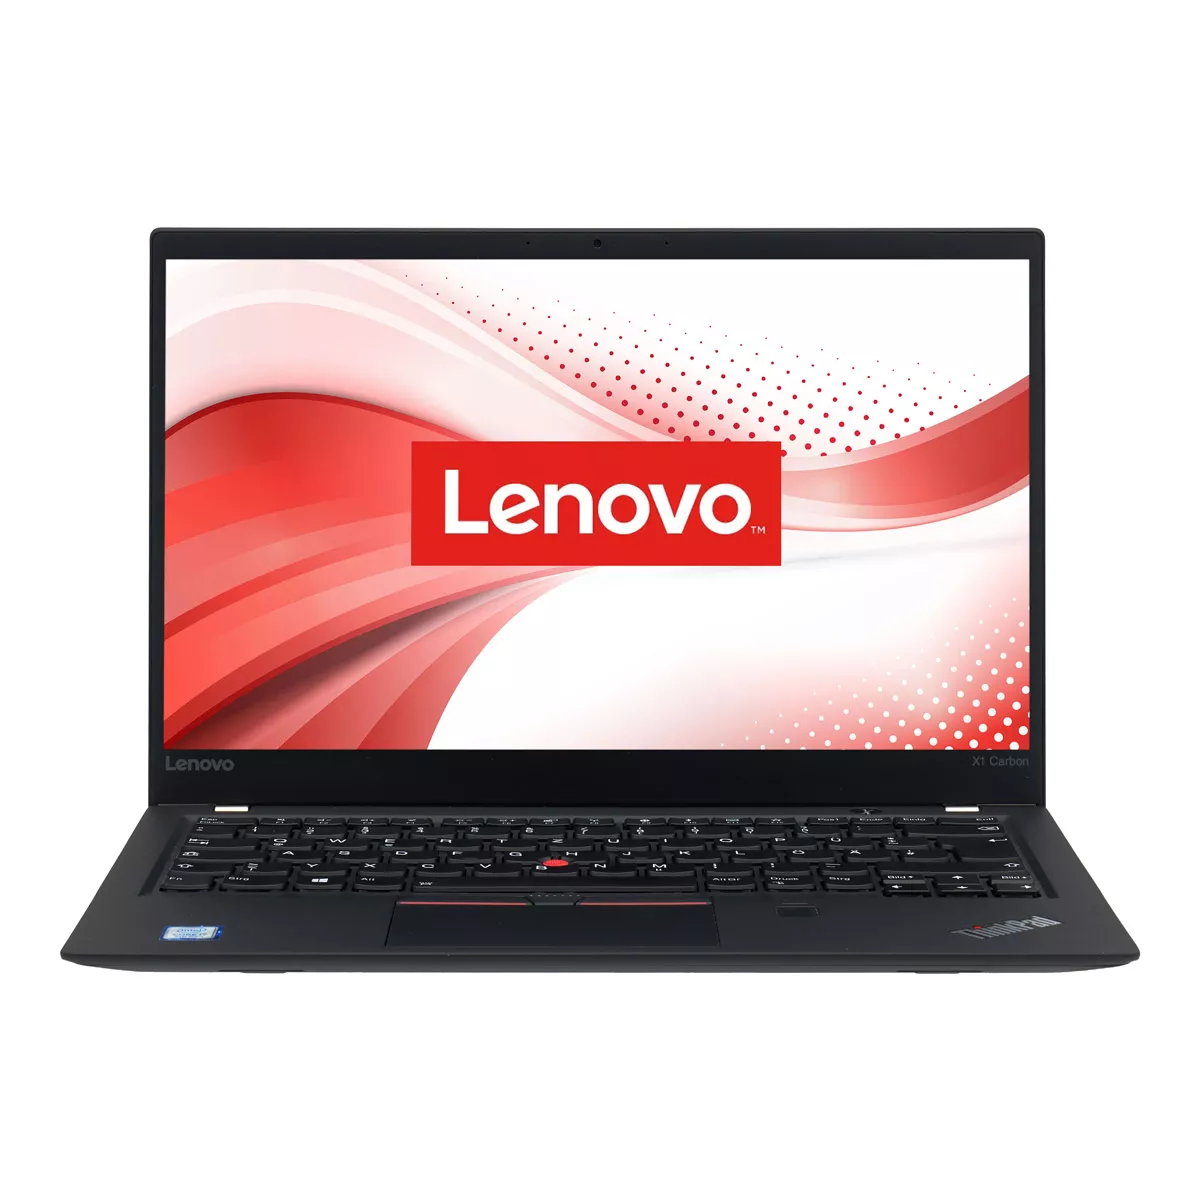 Lenovo ThinkPad X1 Carbon G5 Core i5 7200U 8 GB 240 GB M.2 nVME SSD Webcam B